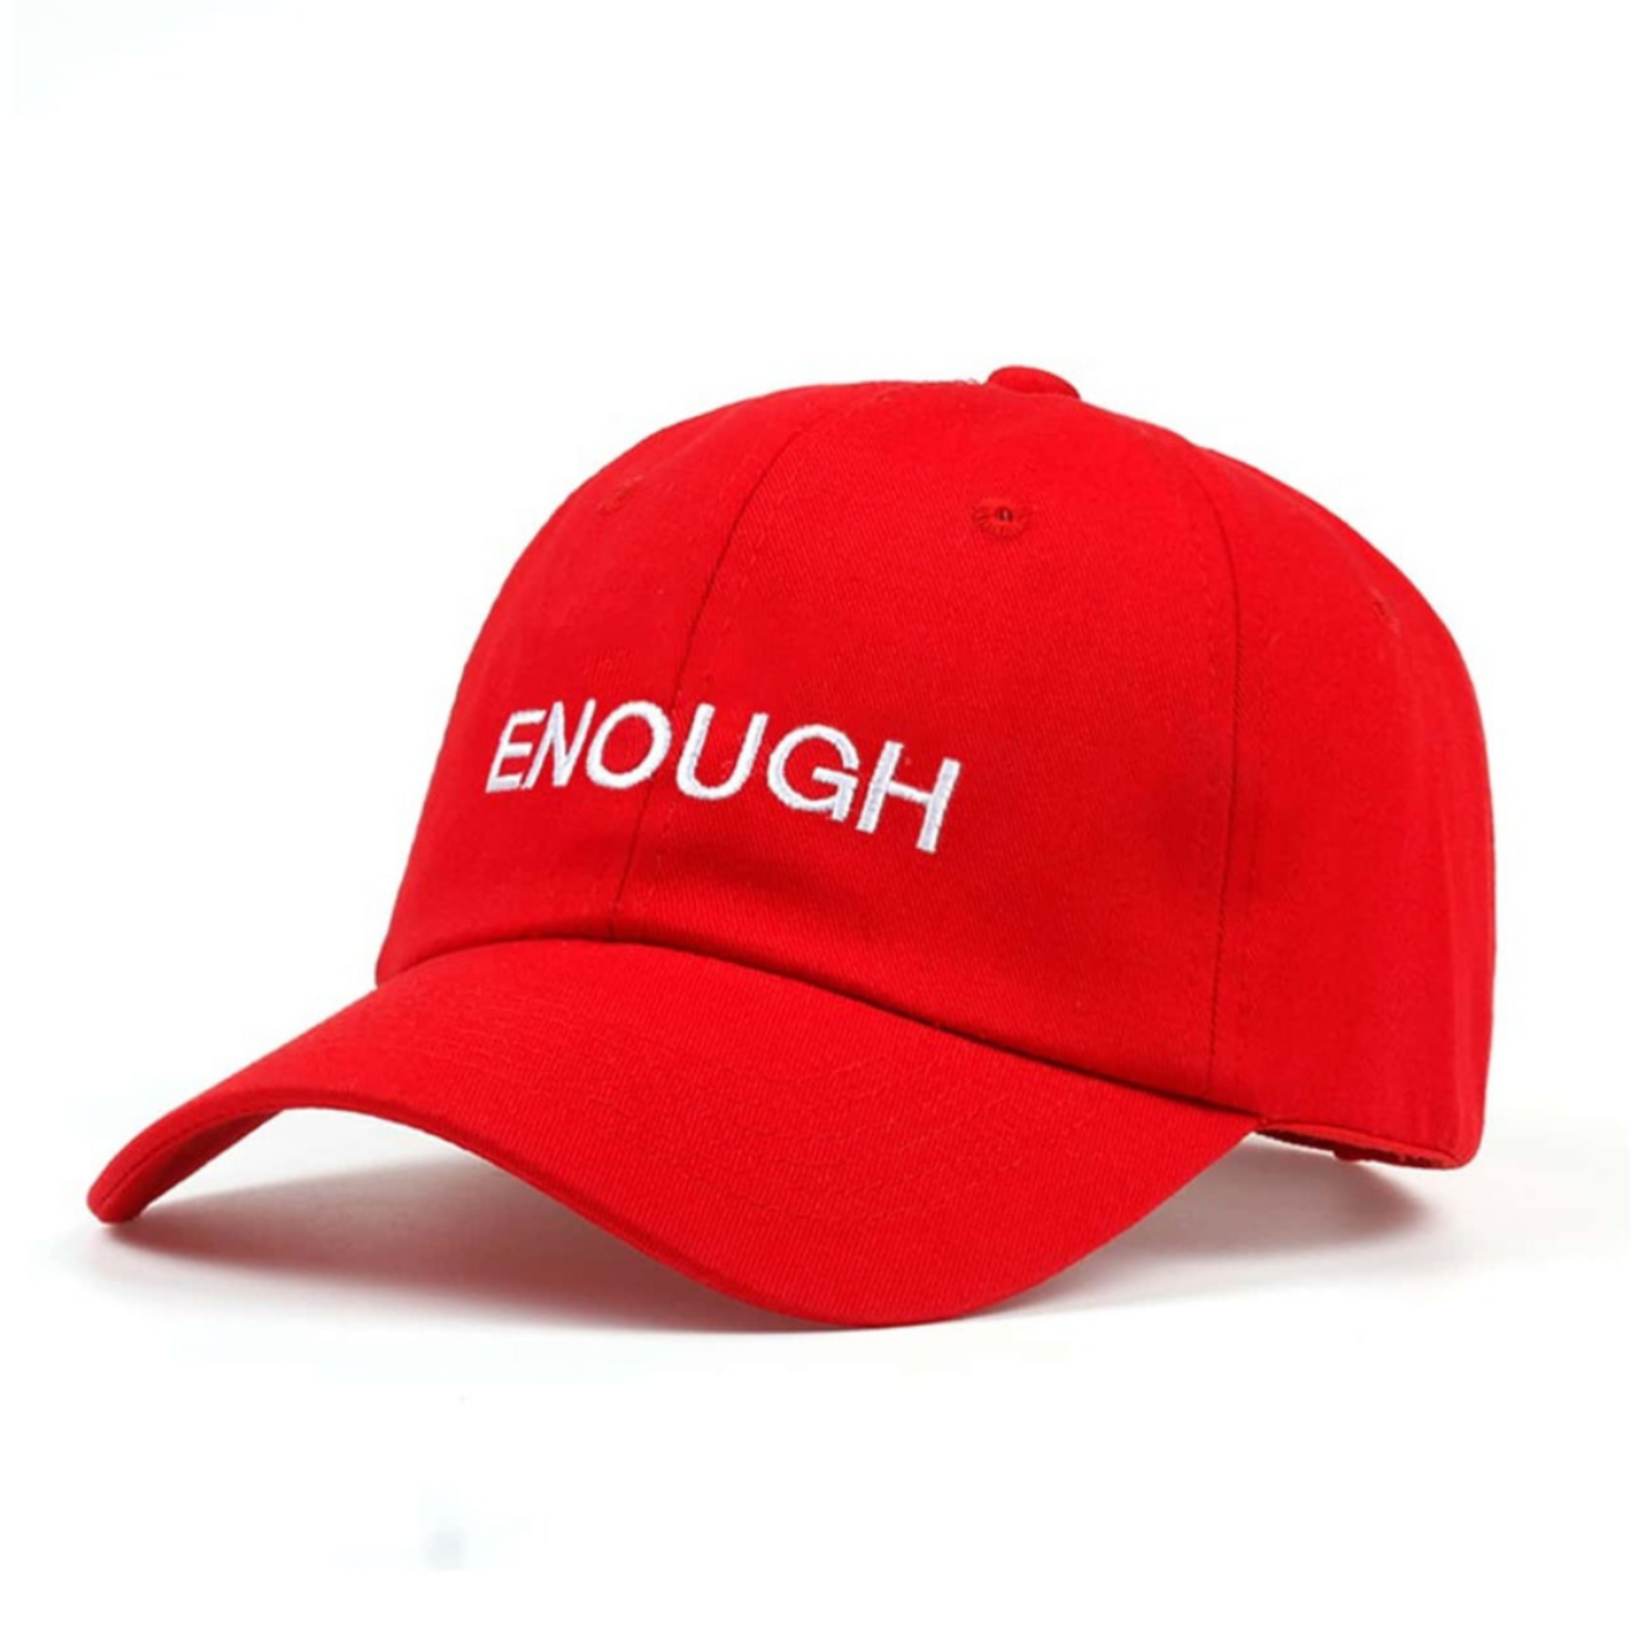 Hat - Enough